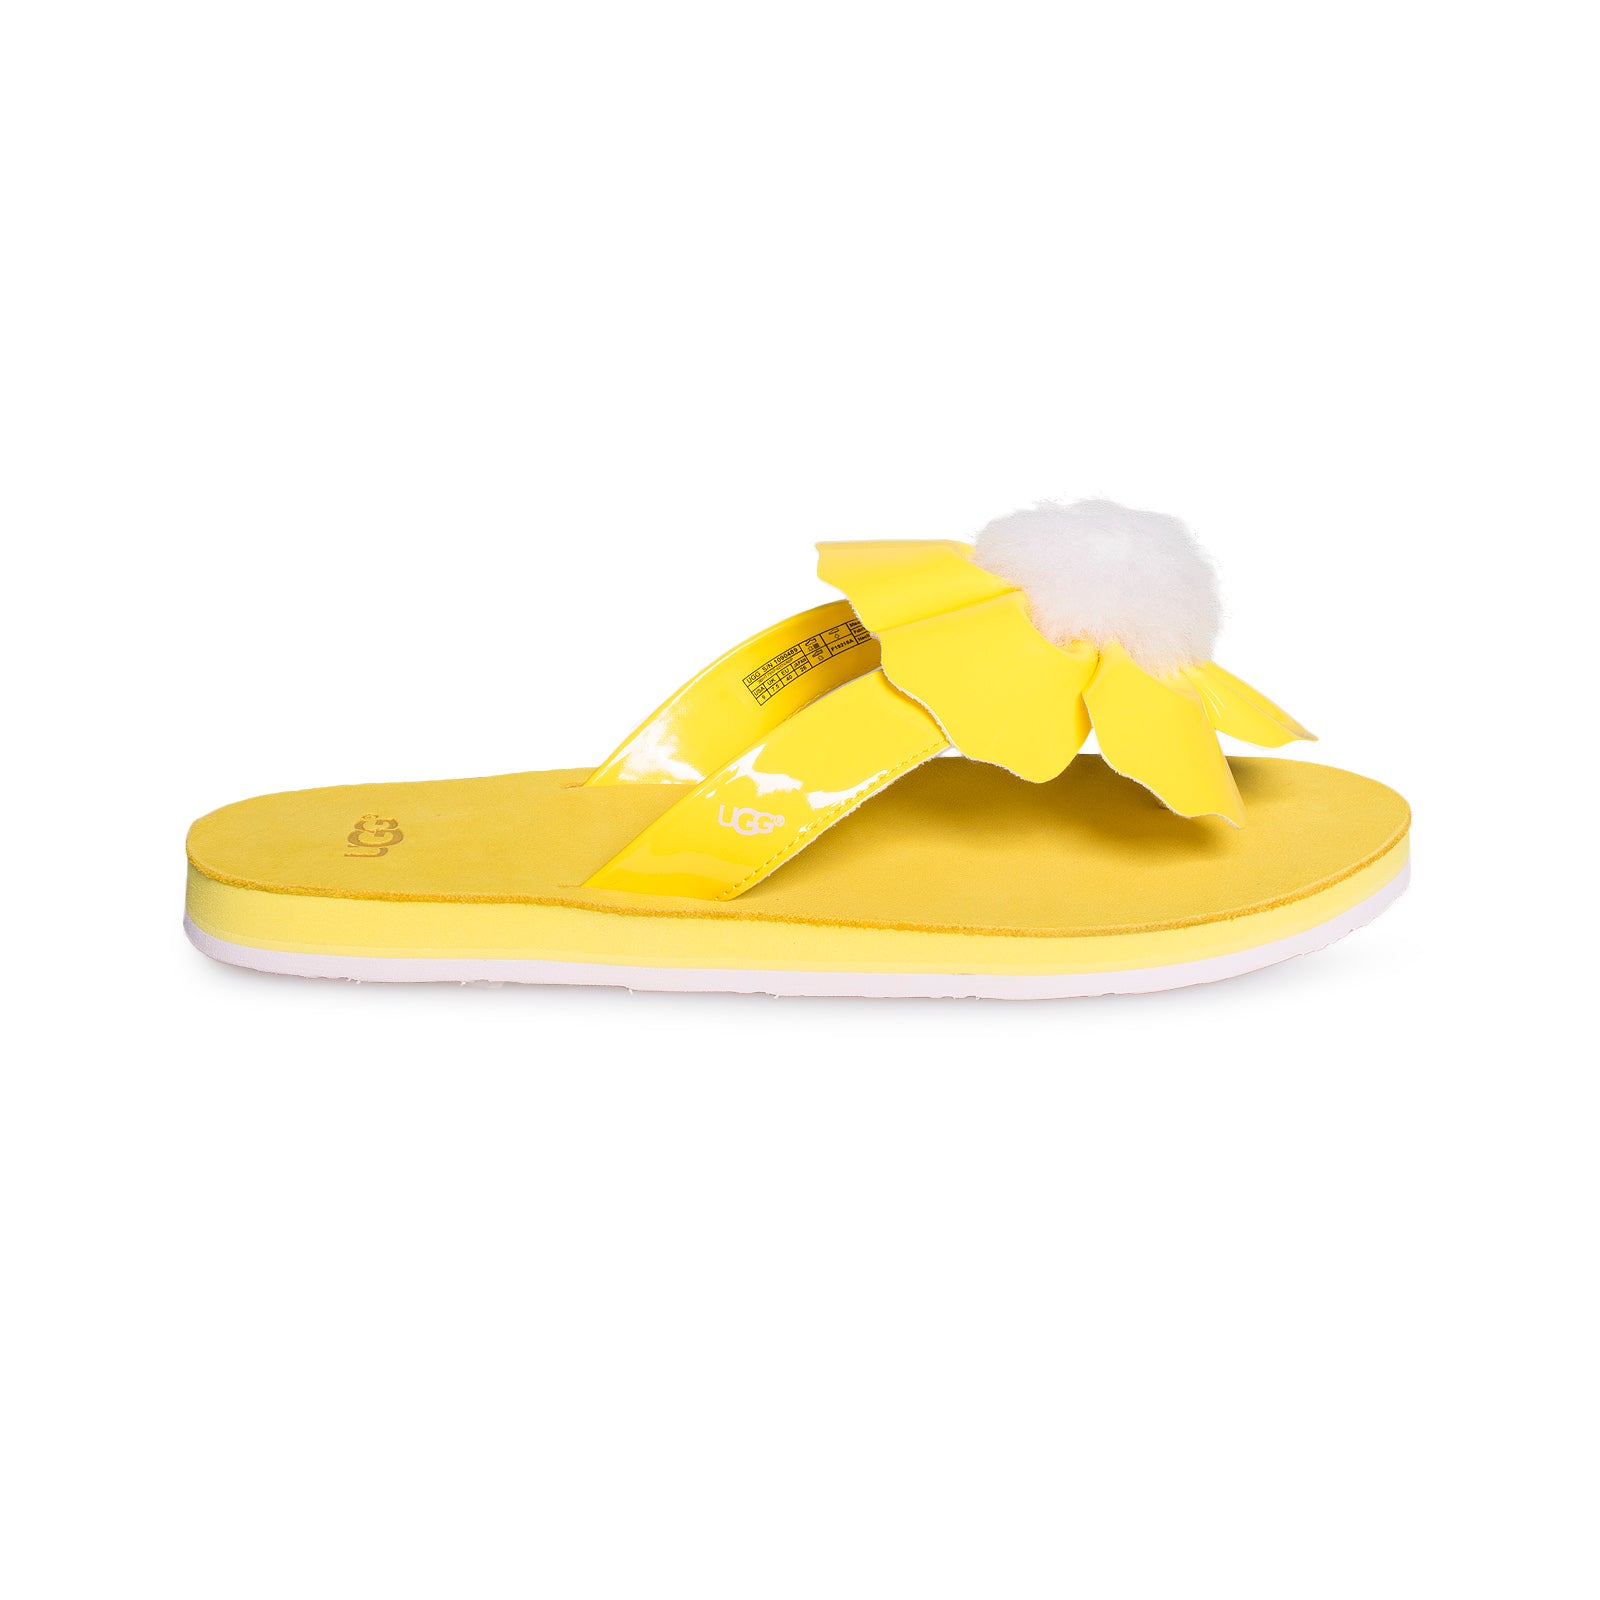 lemon ugg slippers